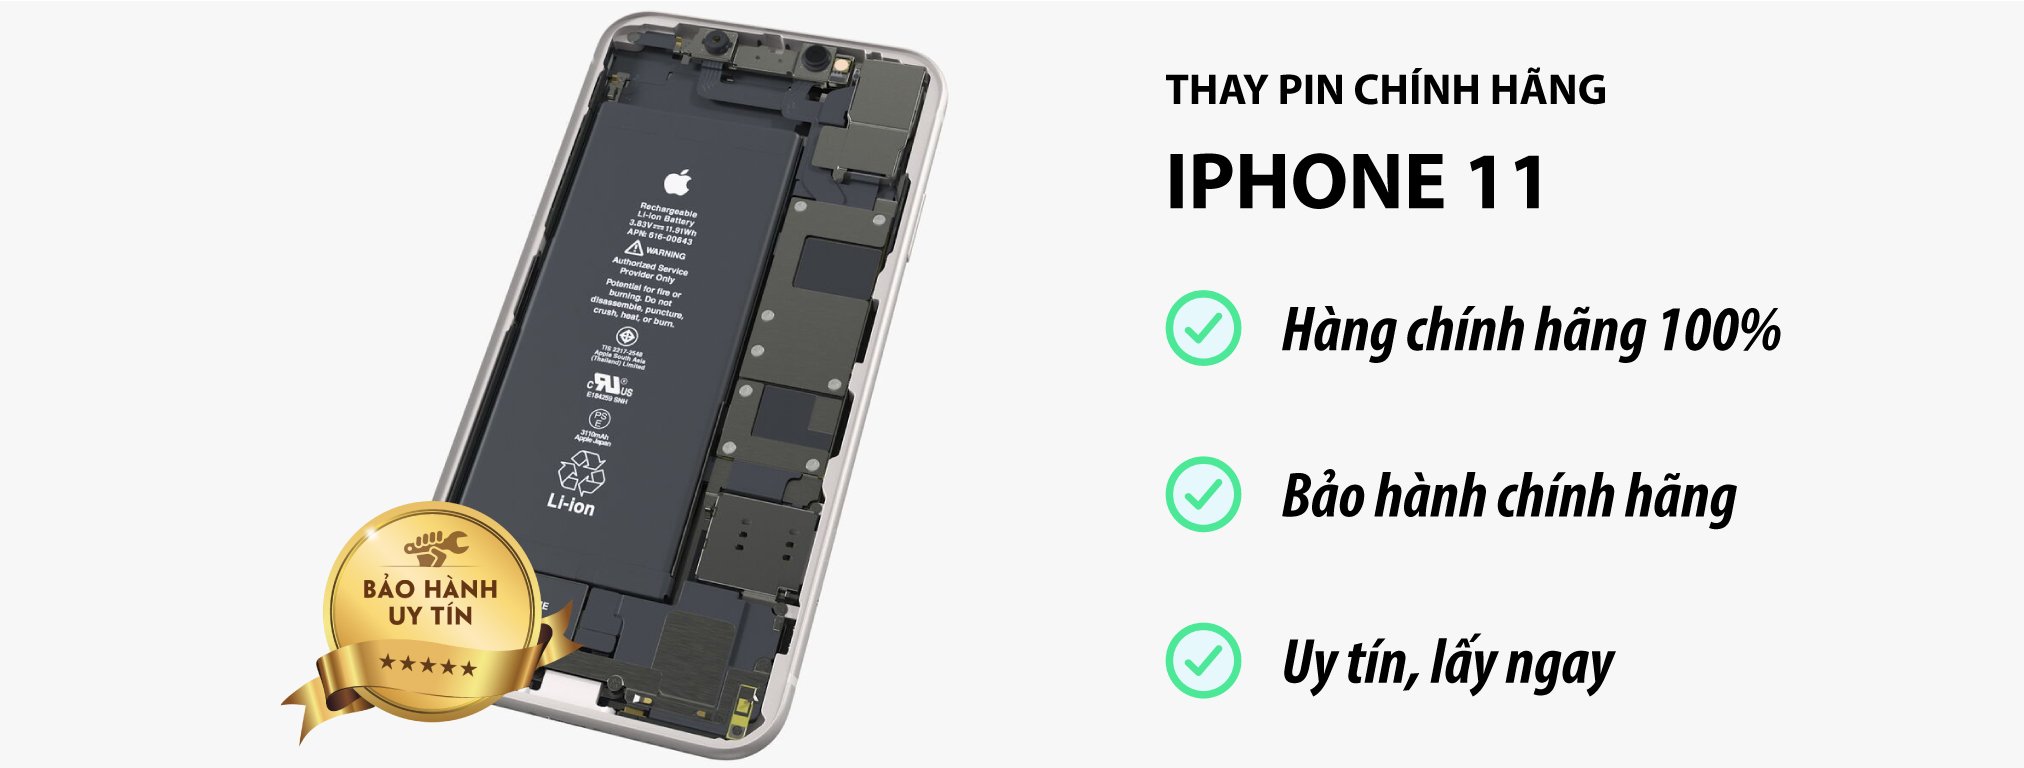 thay pin iPhone 11 chính hãng tại Hà Nội